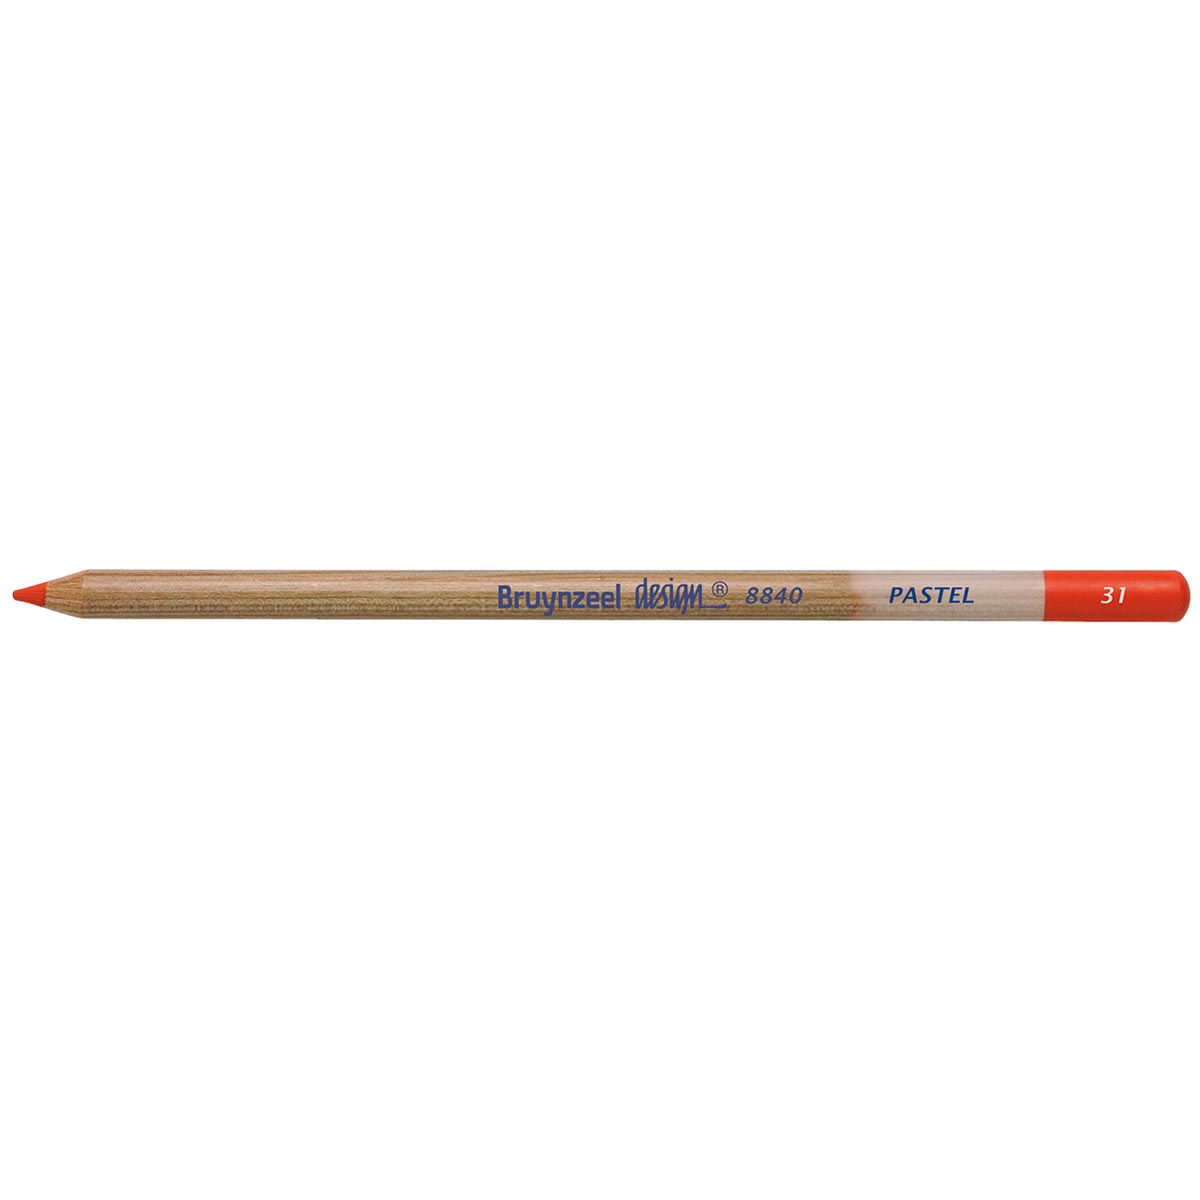 Bruynzeel Design Pastel Pencil - Vermilion 31